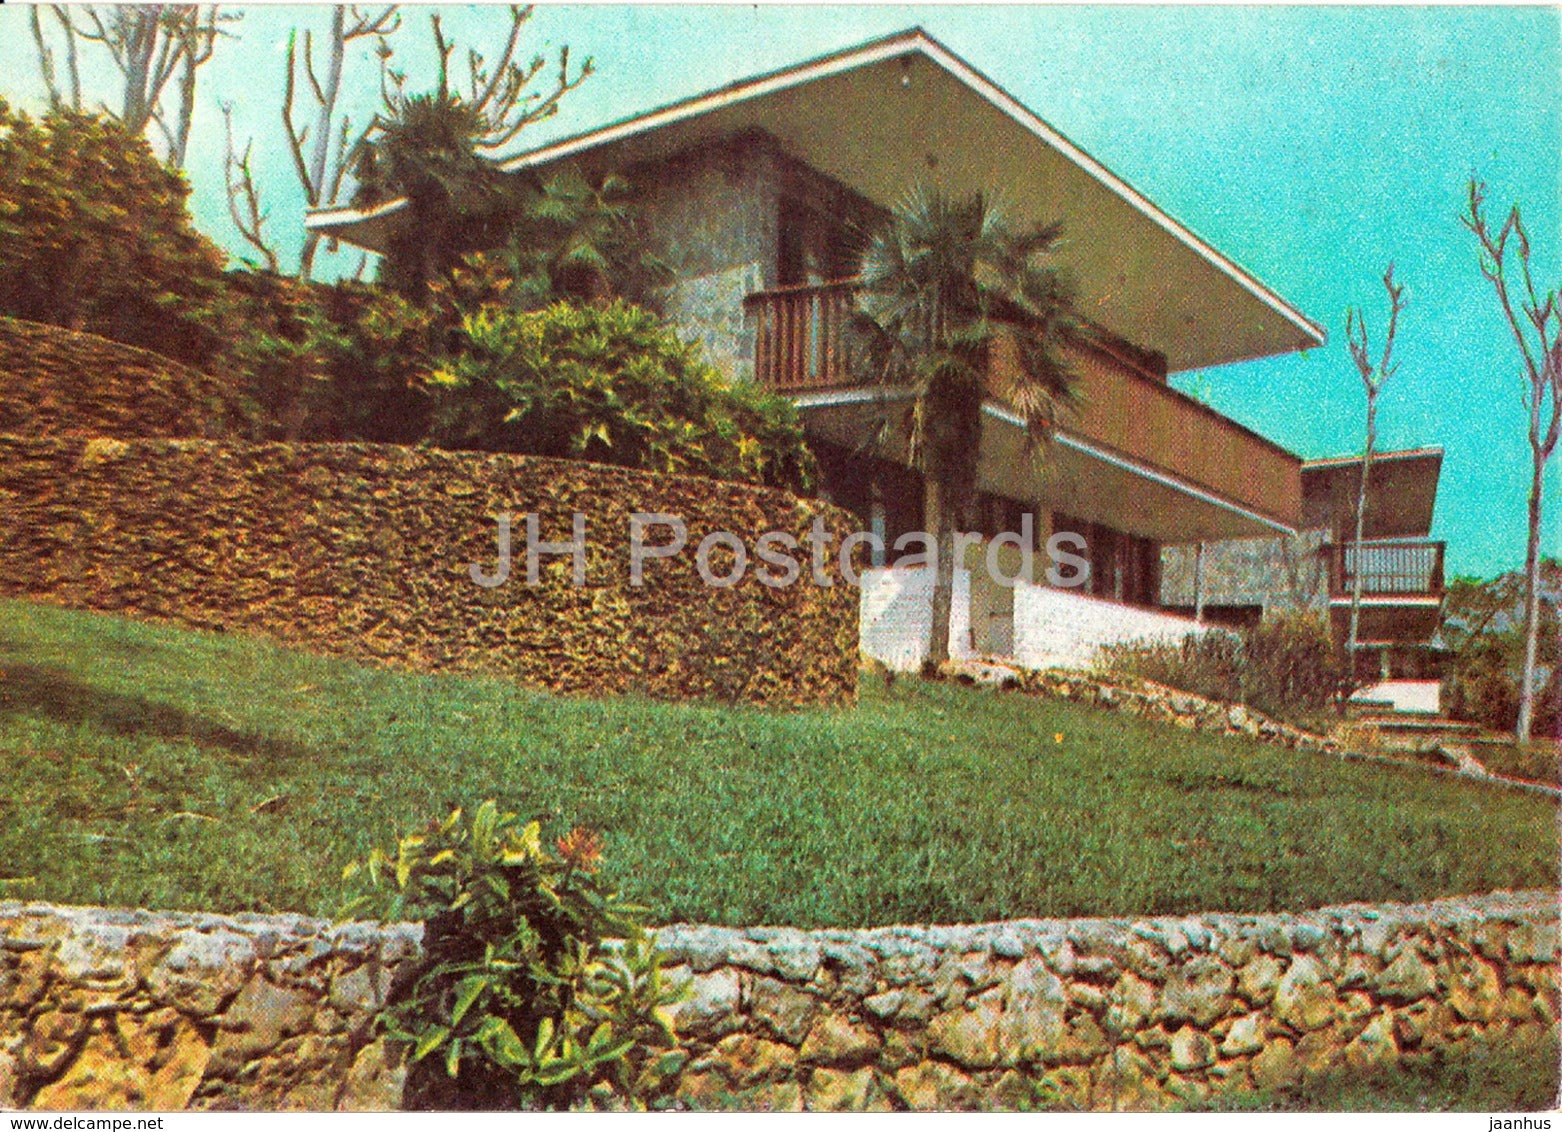 Motel Las Cuevas - Carretera Cienfuegos y Buen Retiro Trinidad , Sancti Spiritus - Cuba - unused - JH Postcards